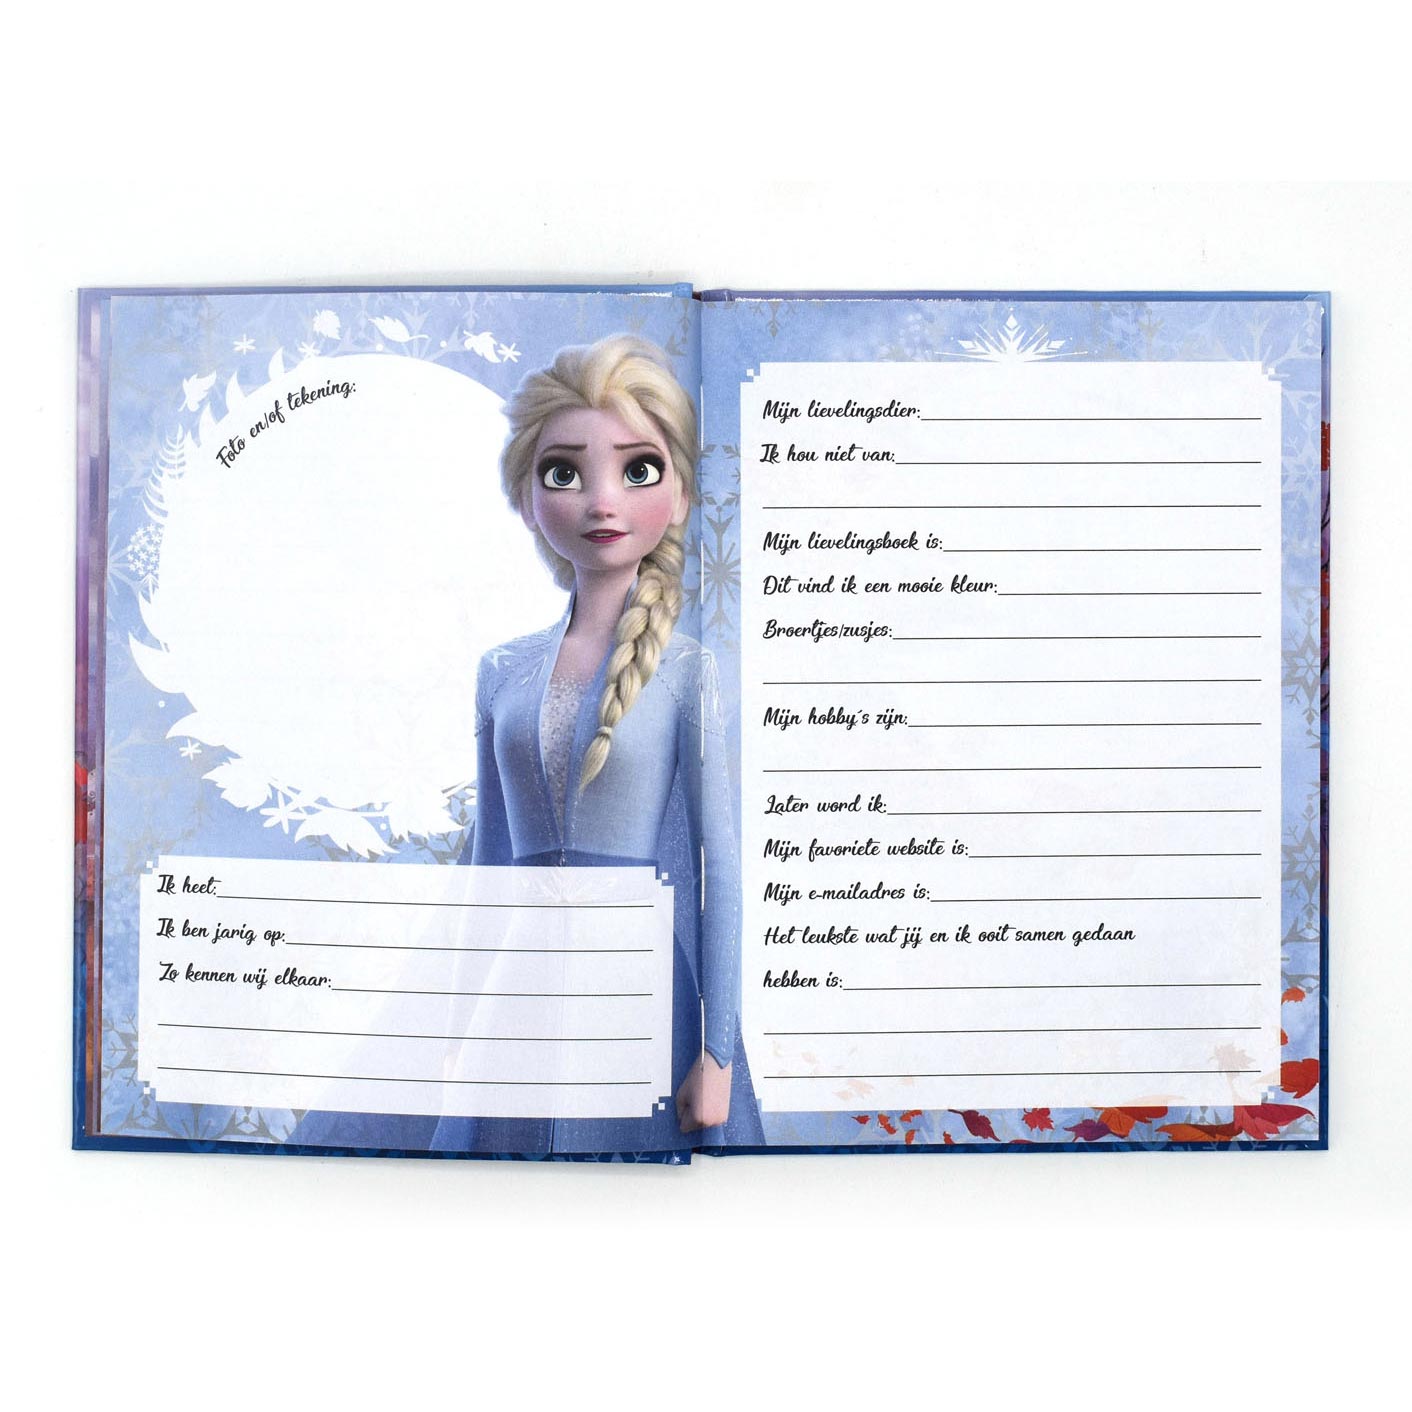 Vriendenboek Frozen 2